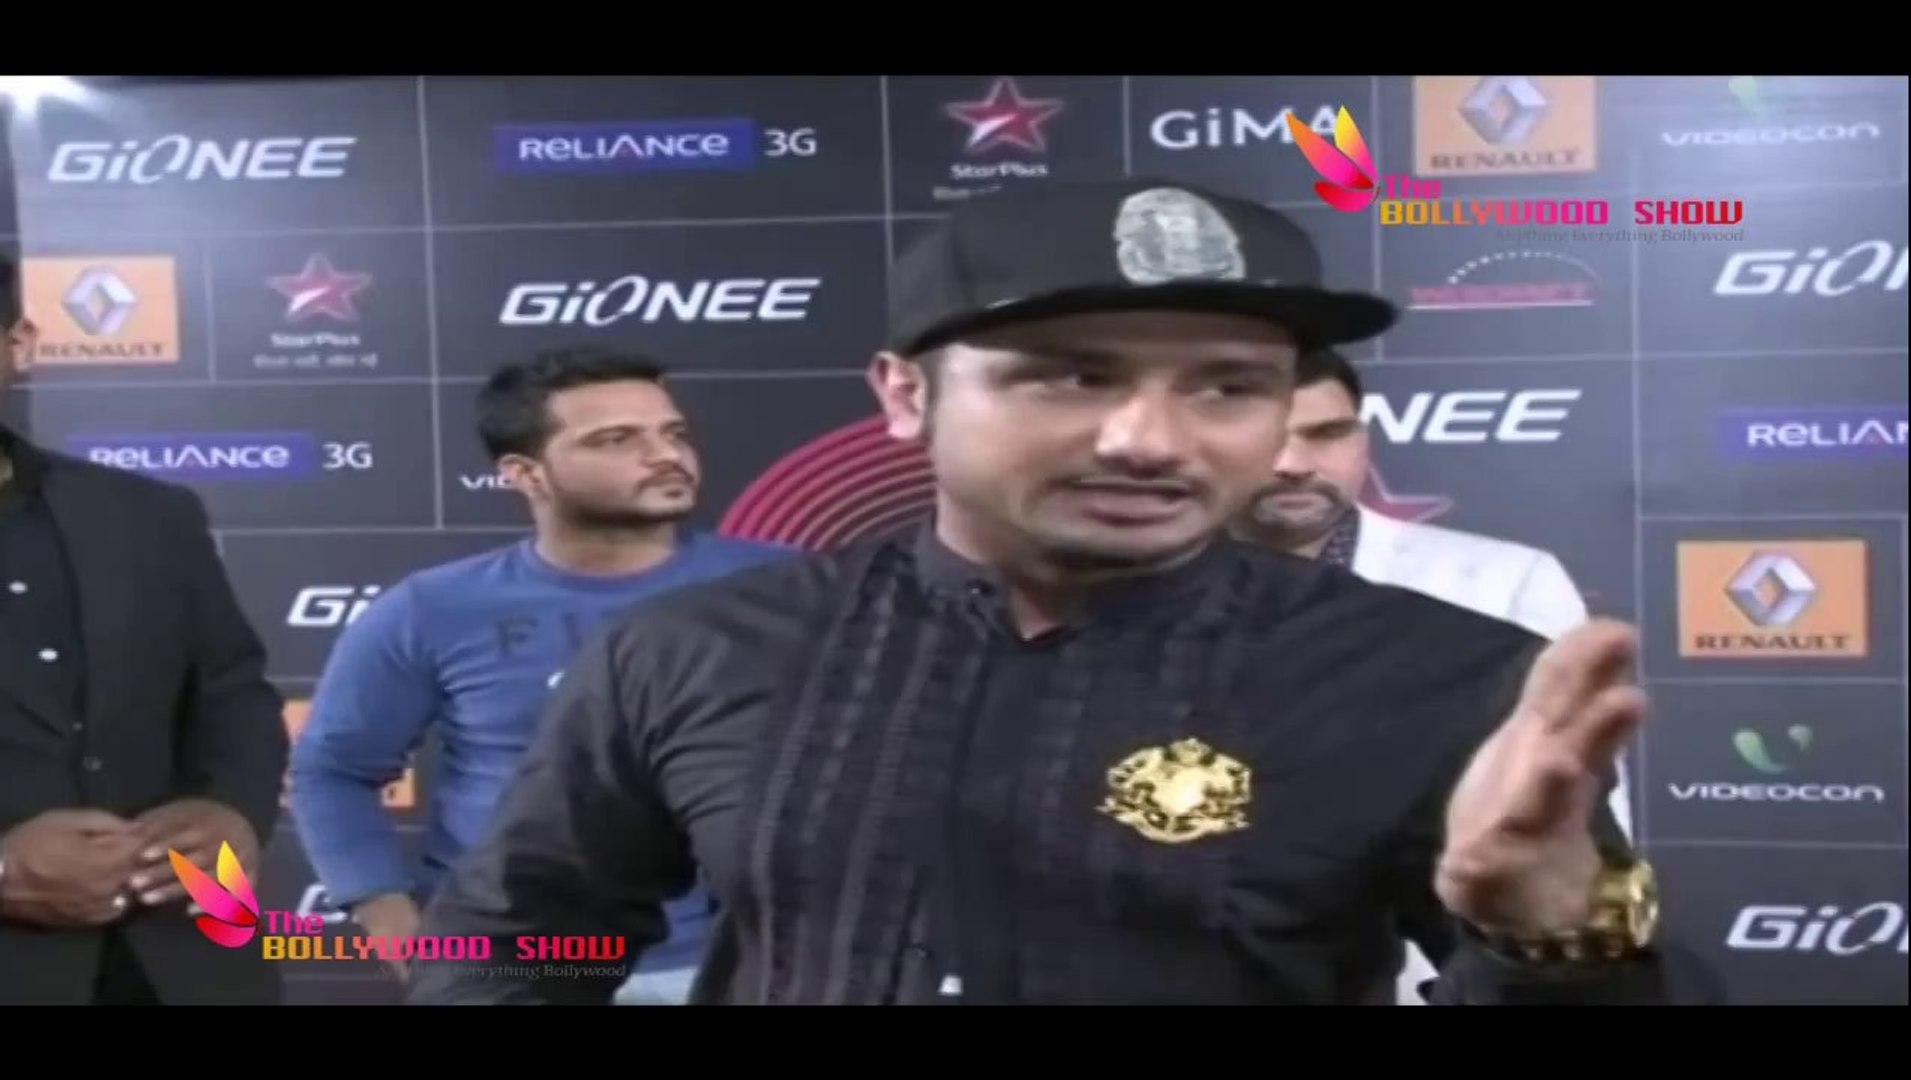 Yo Yo Honey Singh Arrived at 4th Global Indian Music Awards 2014